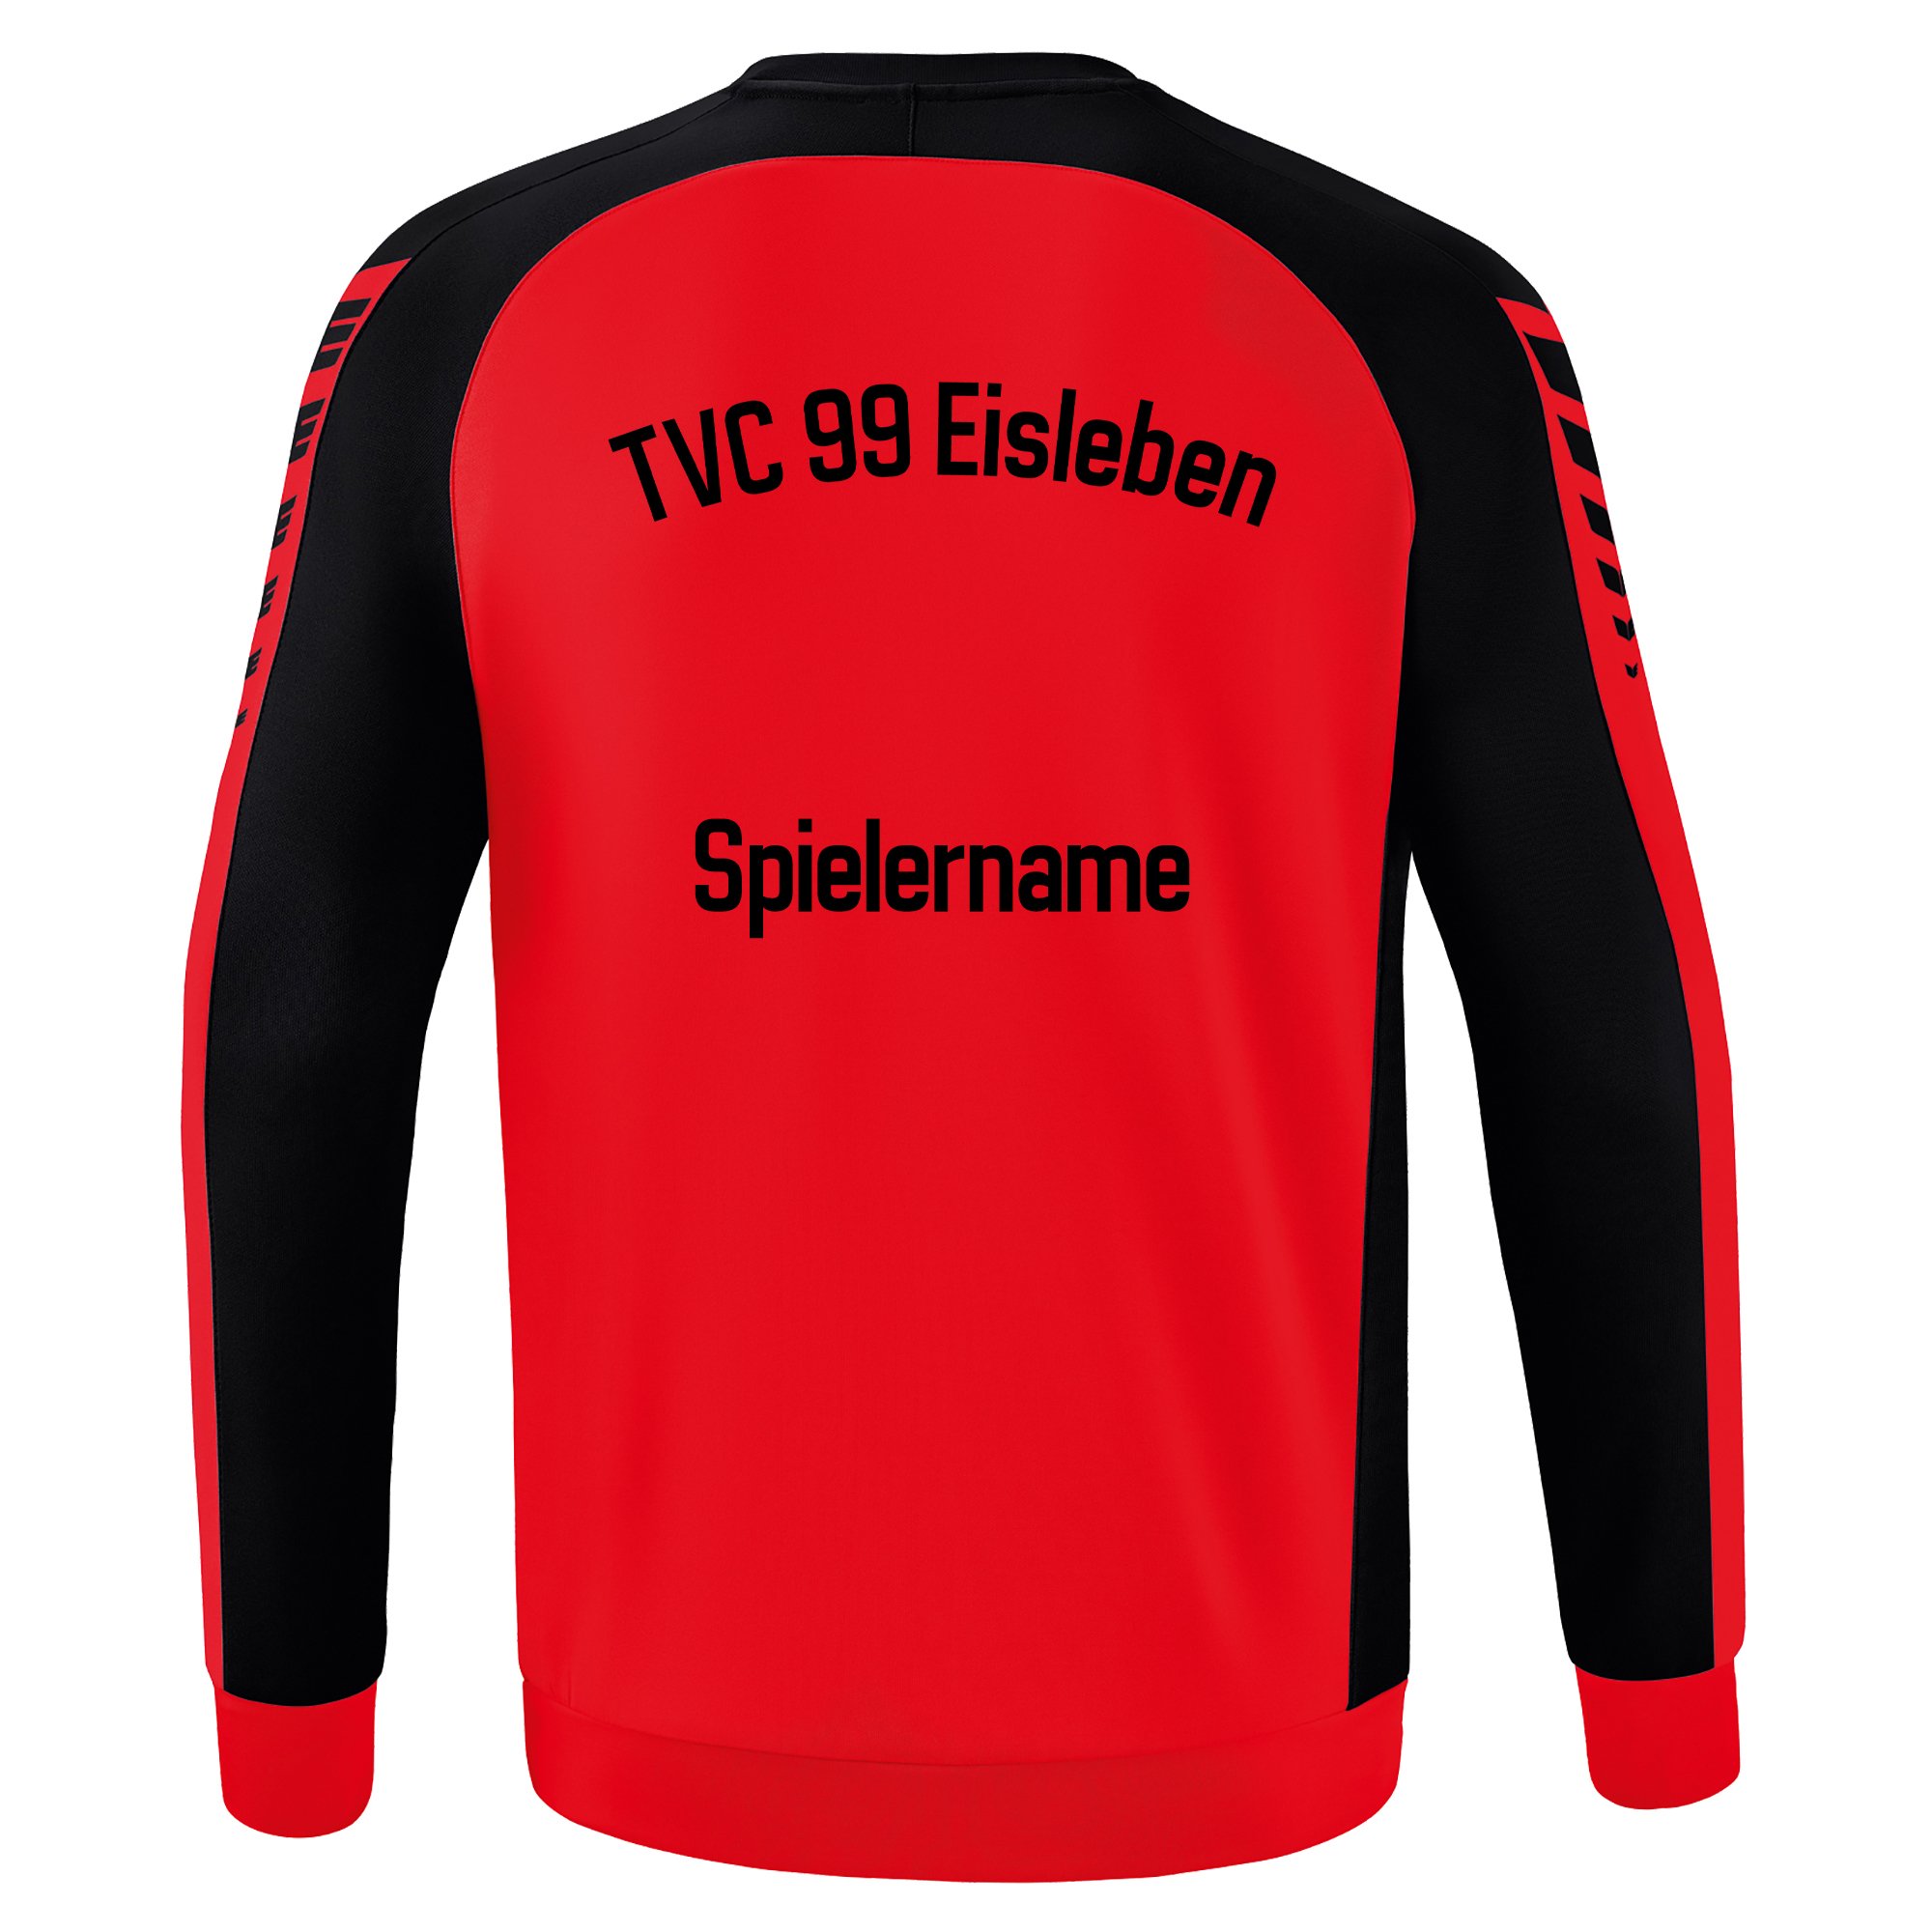 TVC 99 Eisleben Sweatshirt